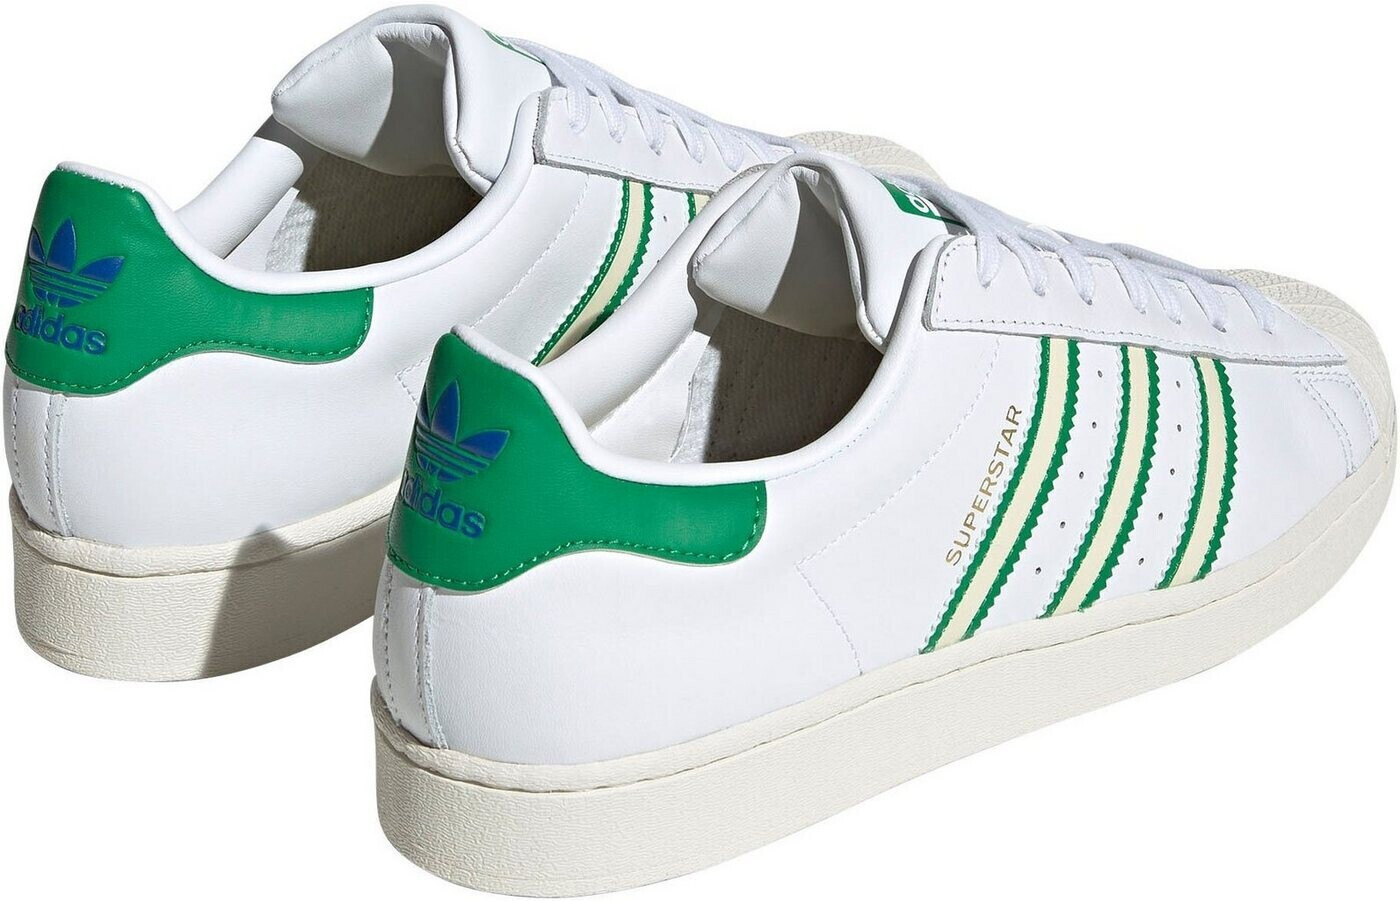 Adidas € ftwr bei white/off 71,19 ab Preisvergleich | Superstar white/green